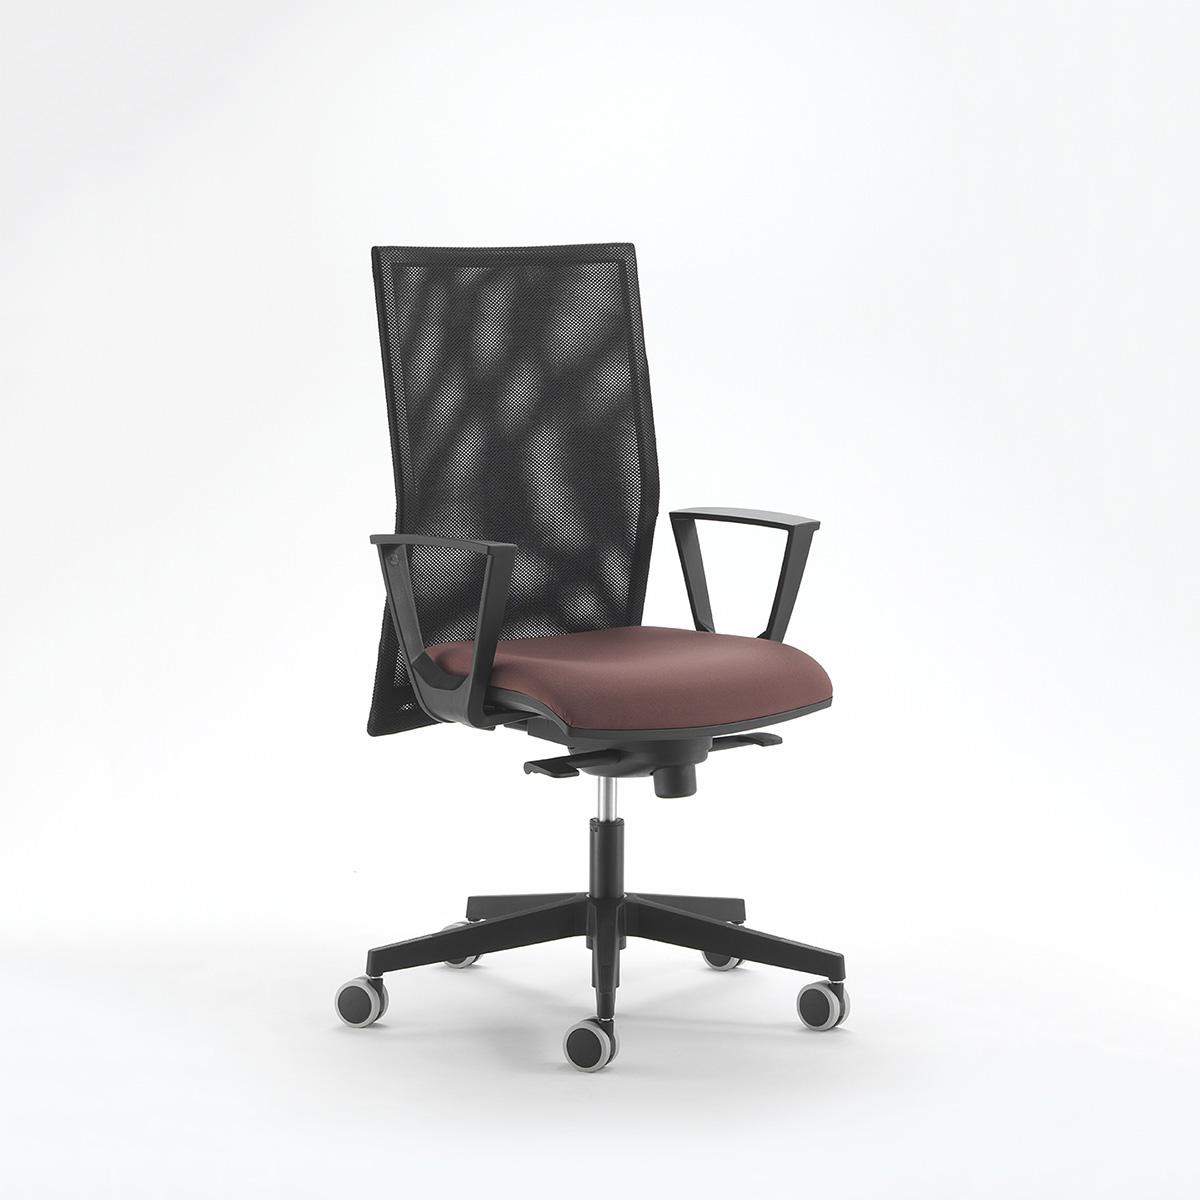 Radne i ergonomske stolice